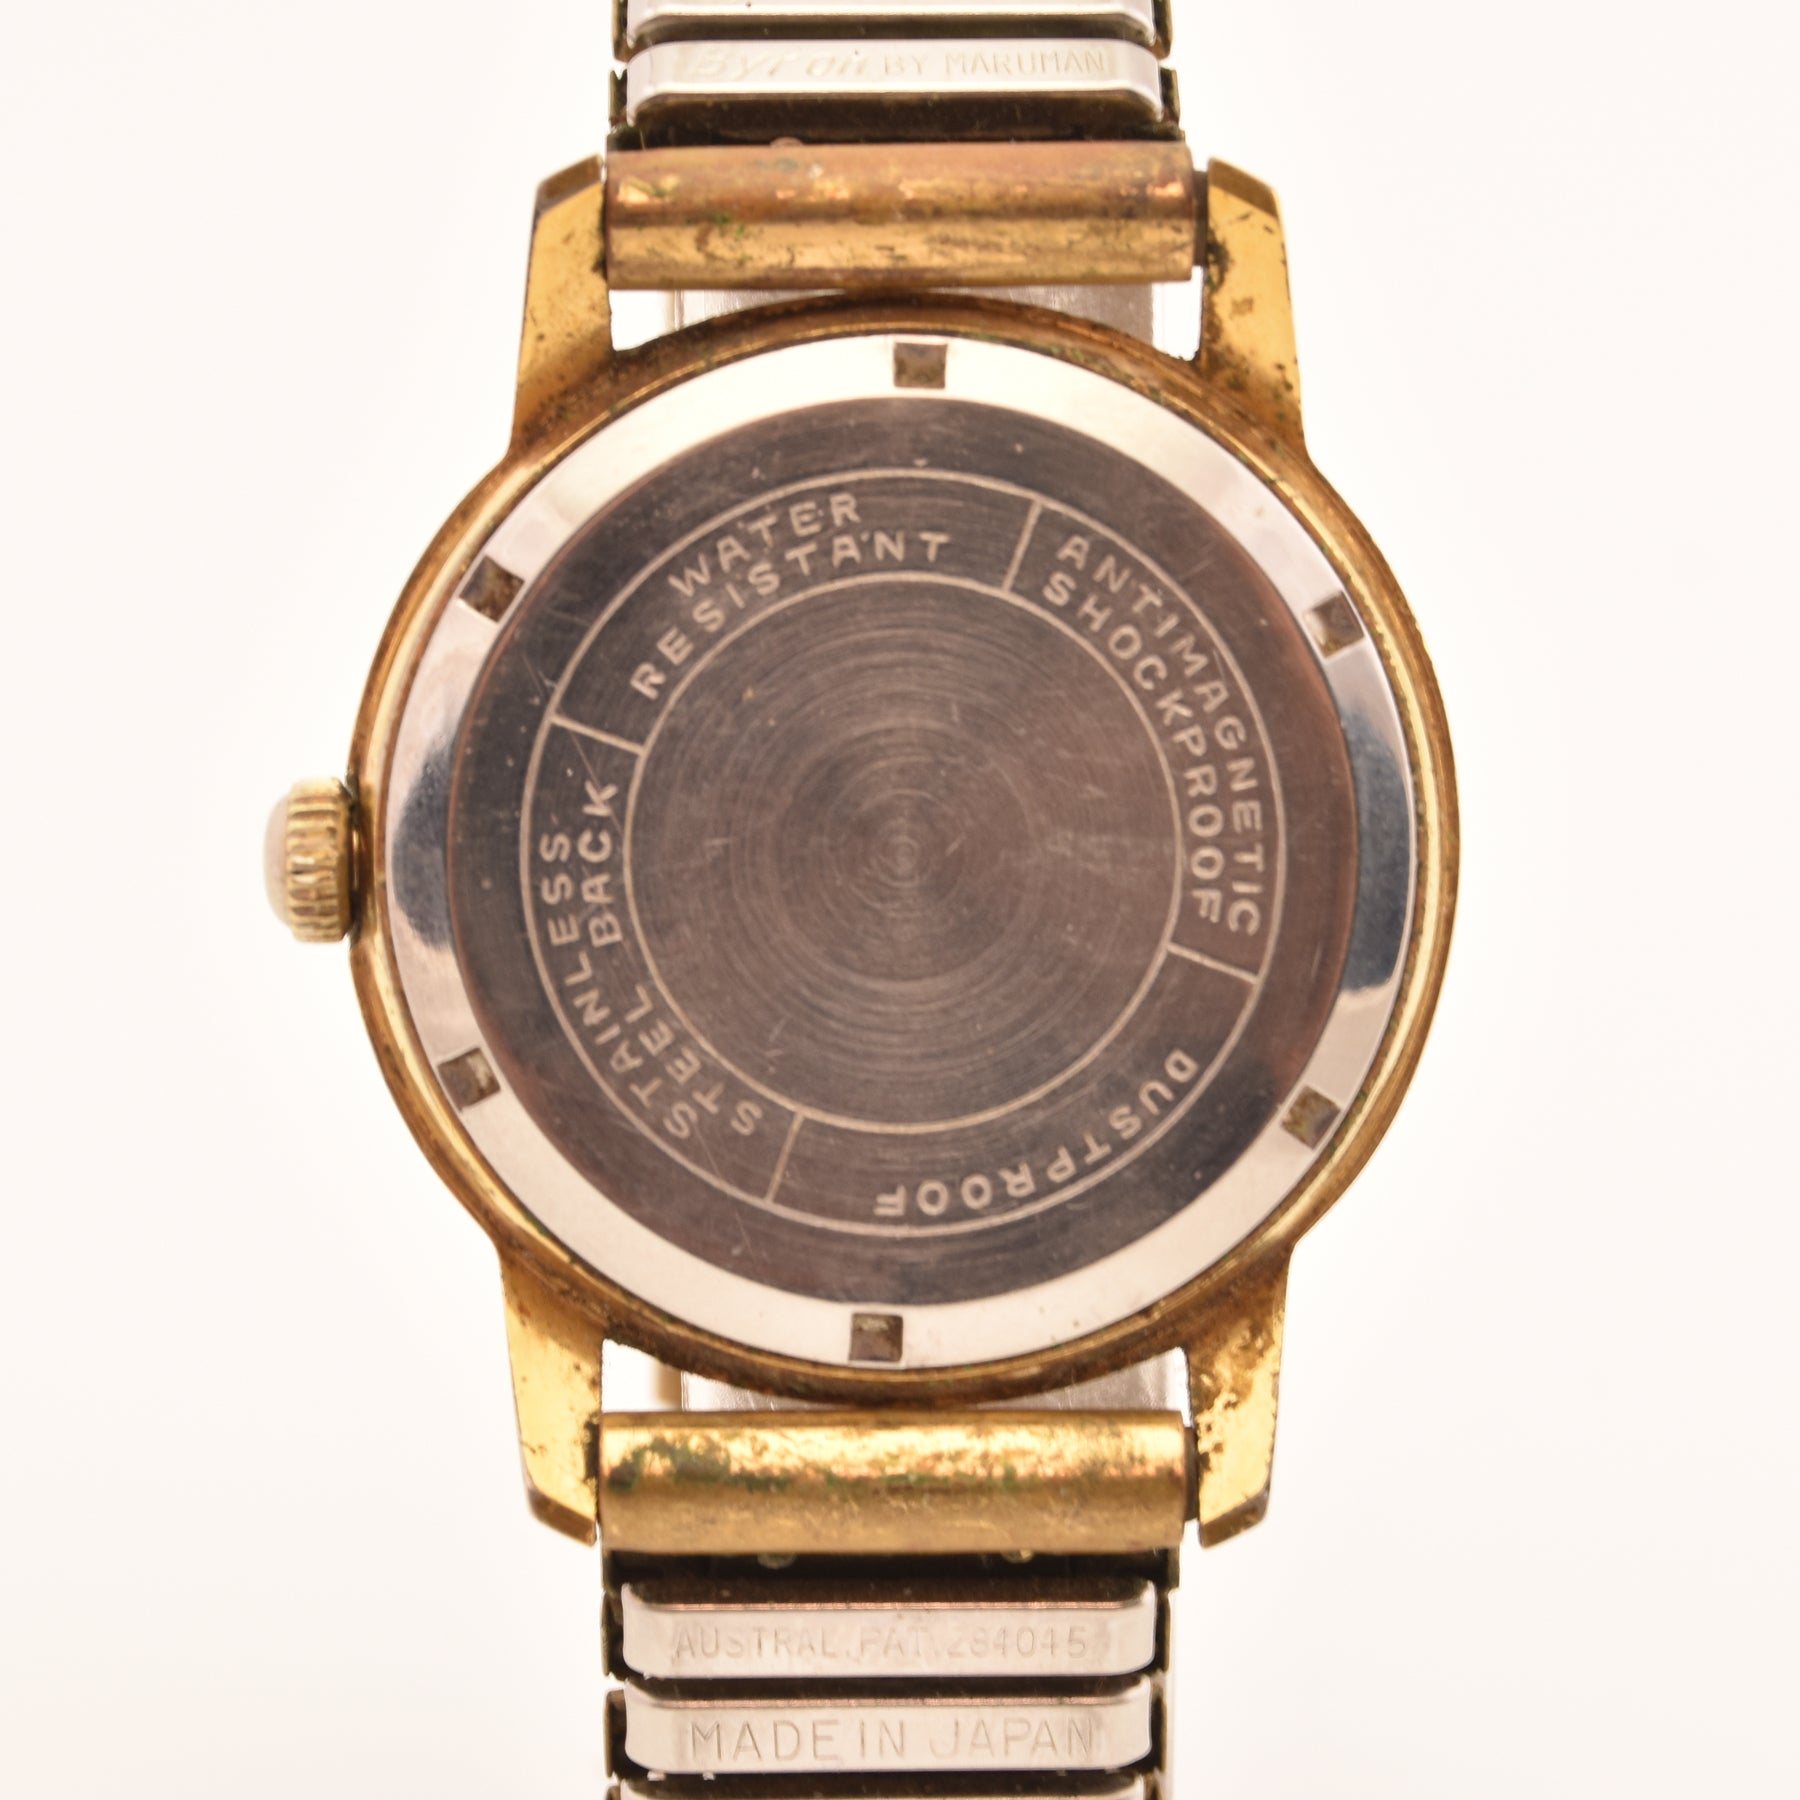 Wrist Watch Felicia De Luxe manual wind c1960s